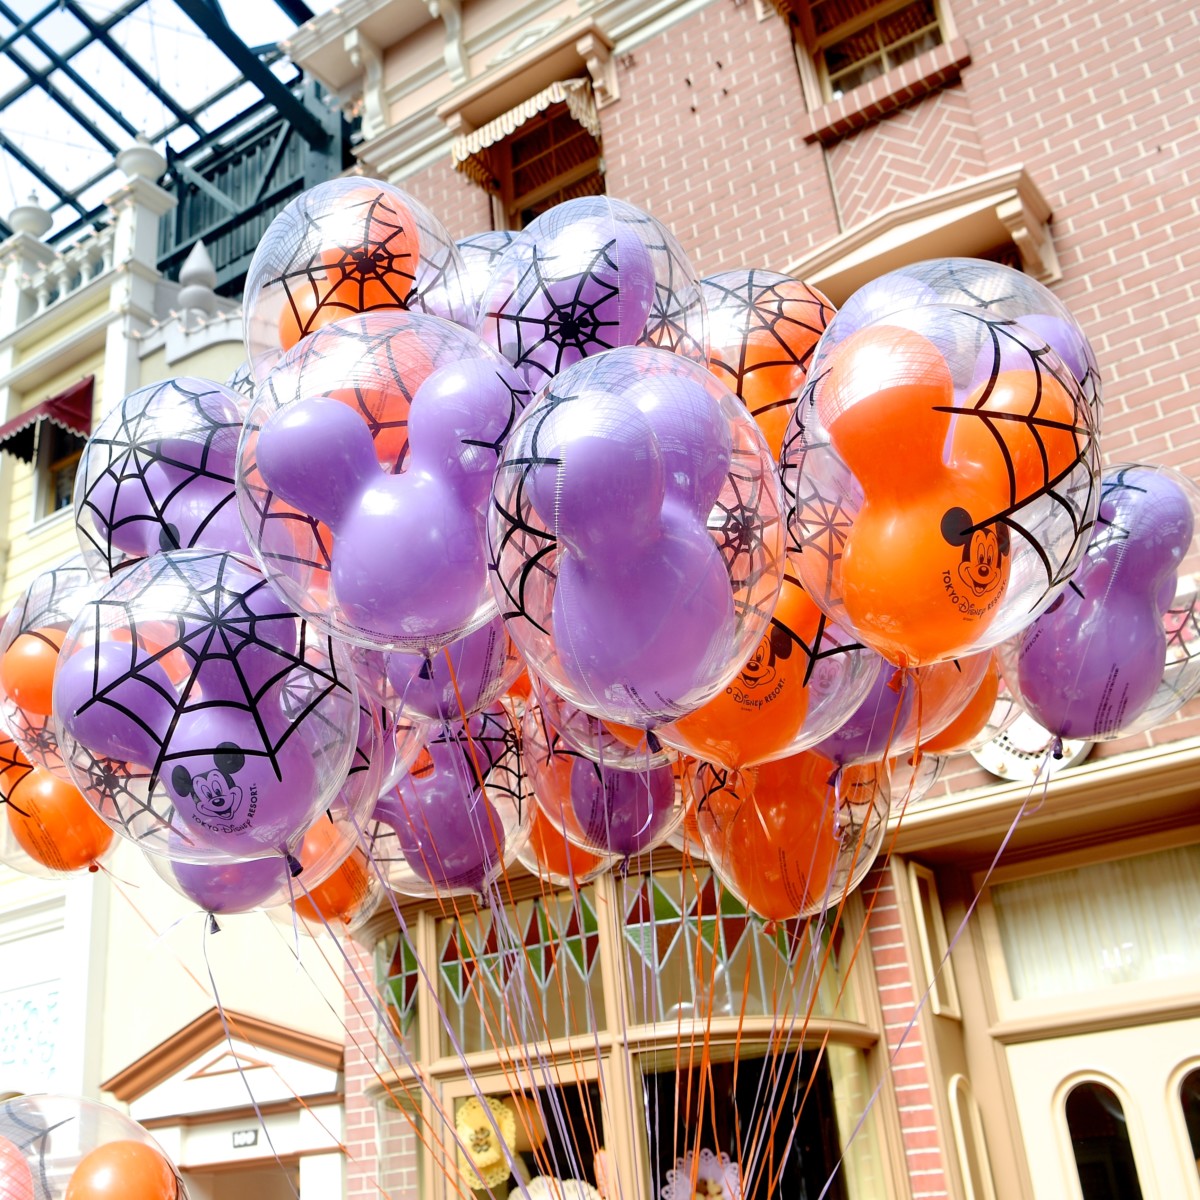 オレンジと紫の蜘蛛の巣デザイン 東京ディズニーランド ディズニー ハロウィーン19 ミッキーバルーン